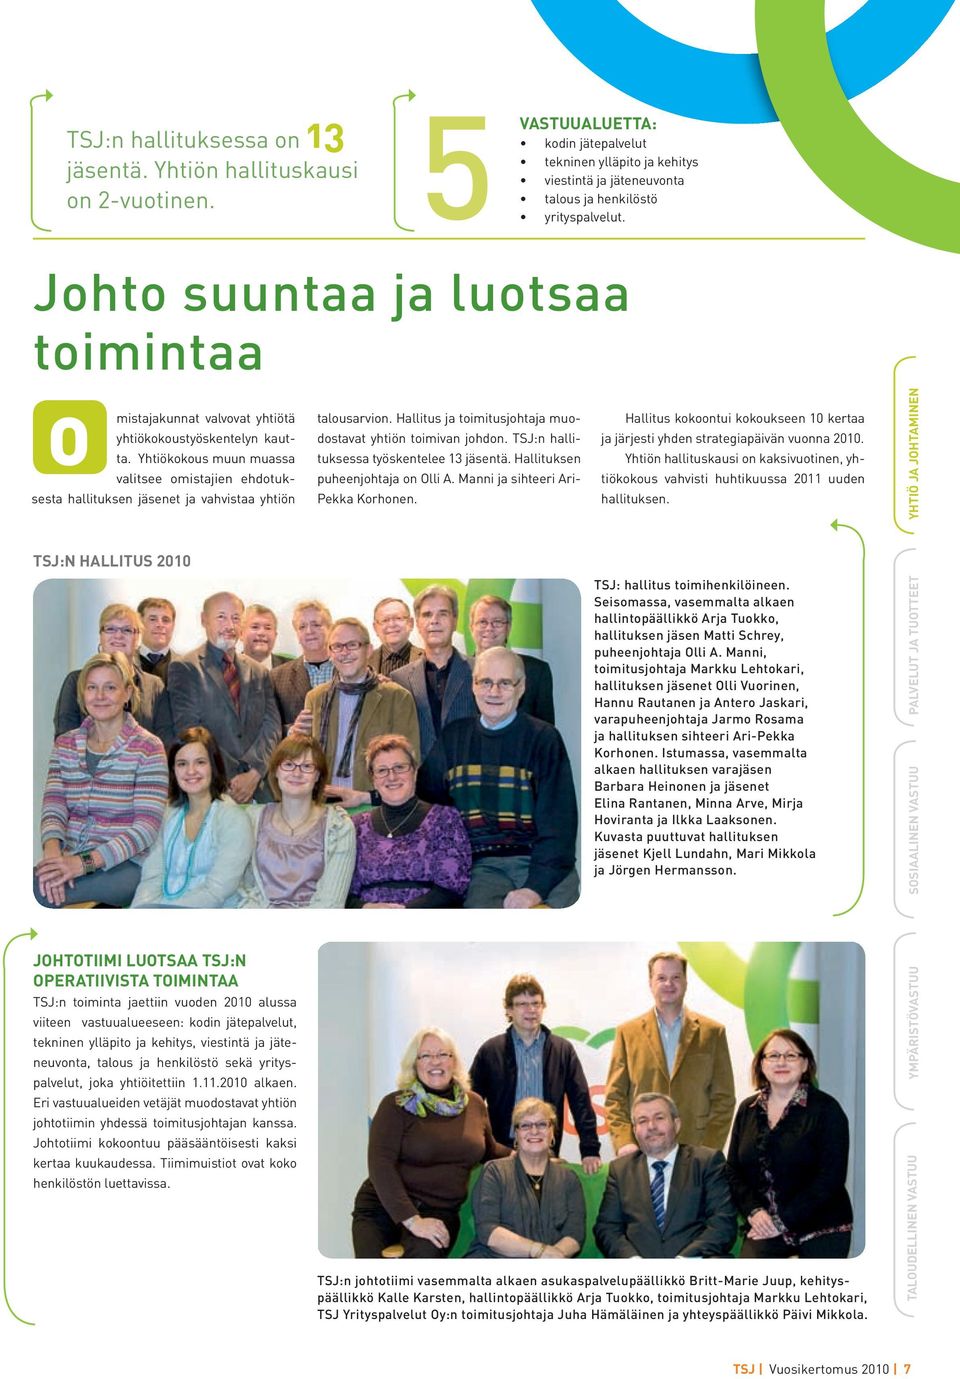 TSJ:n hallituksessa työskentelee 13 jäsentä. Hallituksen puheenjohtaja on Olli A. Manni ja sihteeri Ari- Pekka Korhonen.